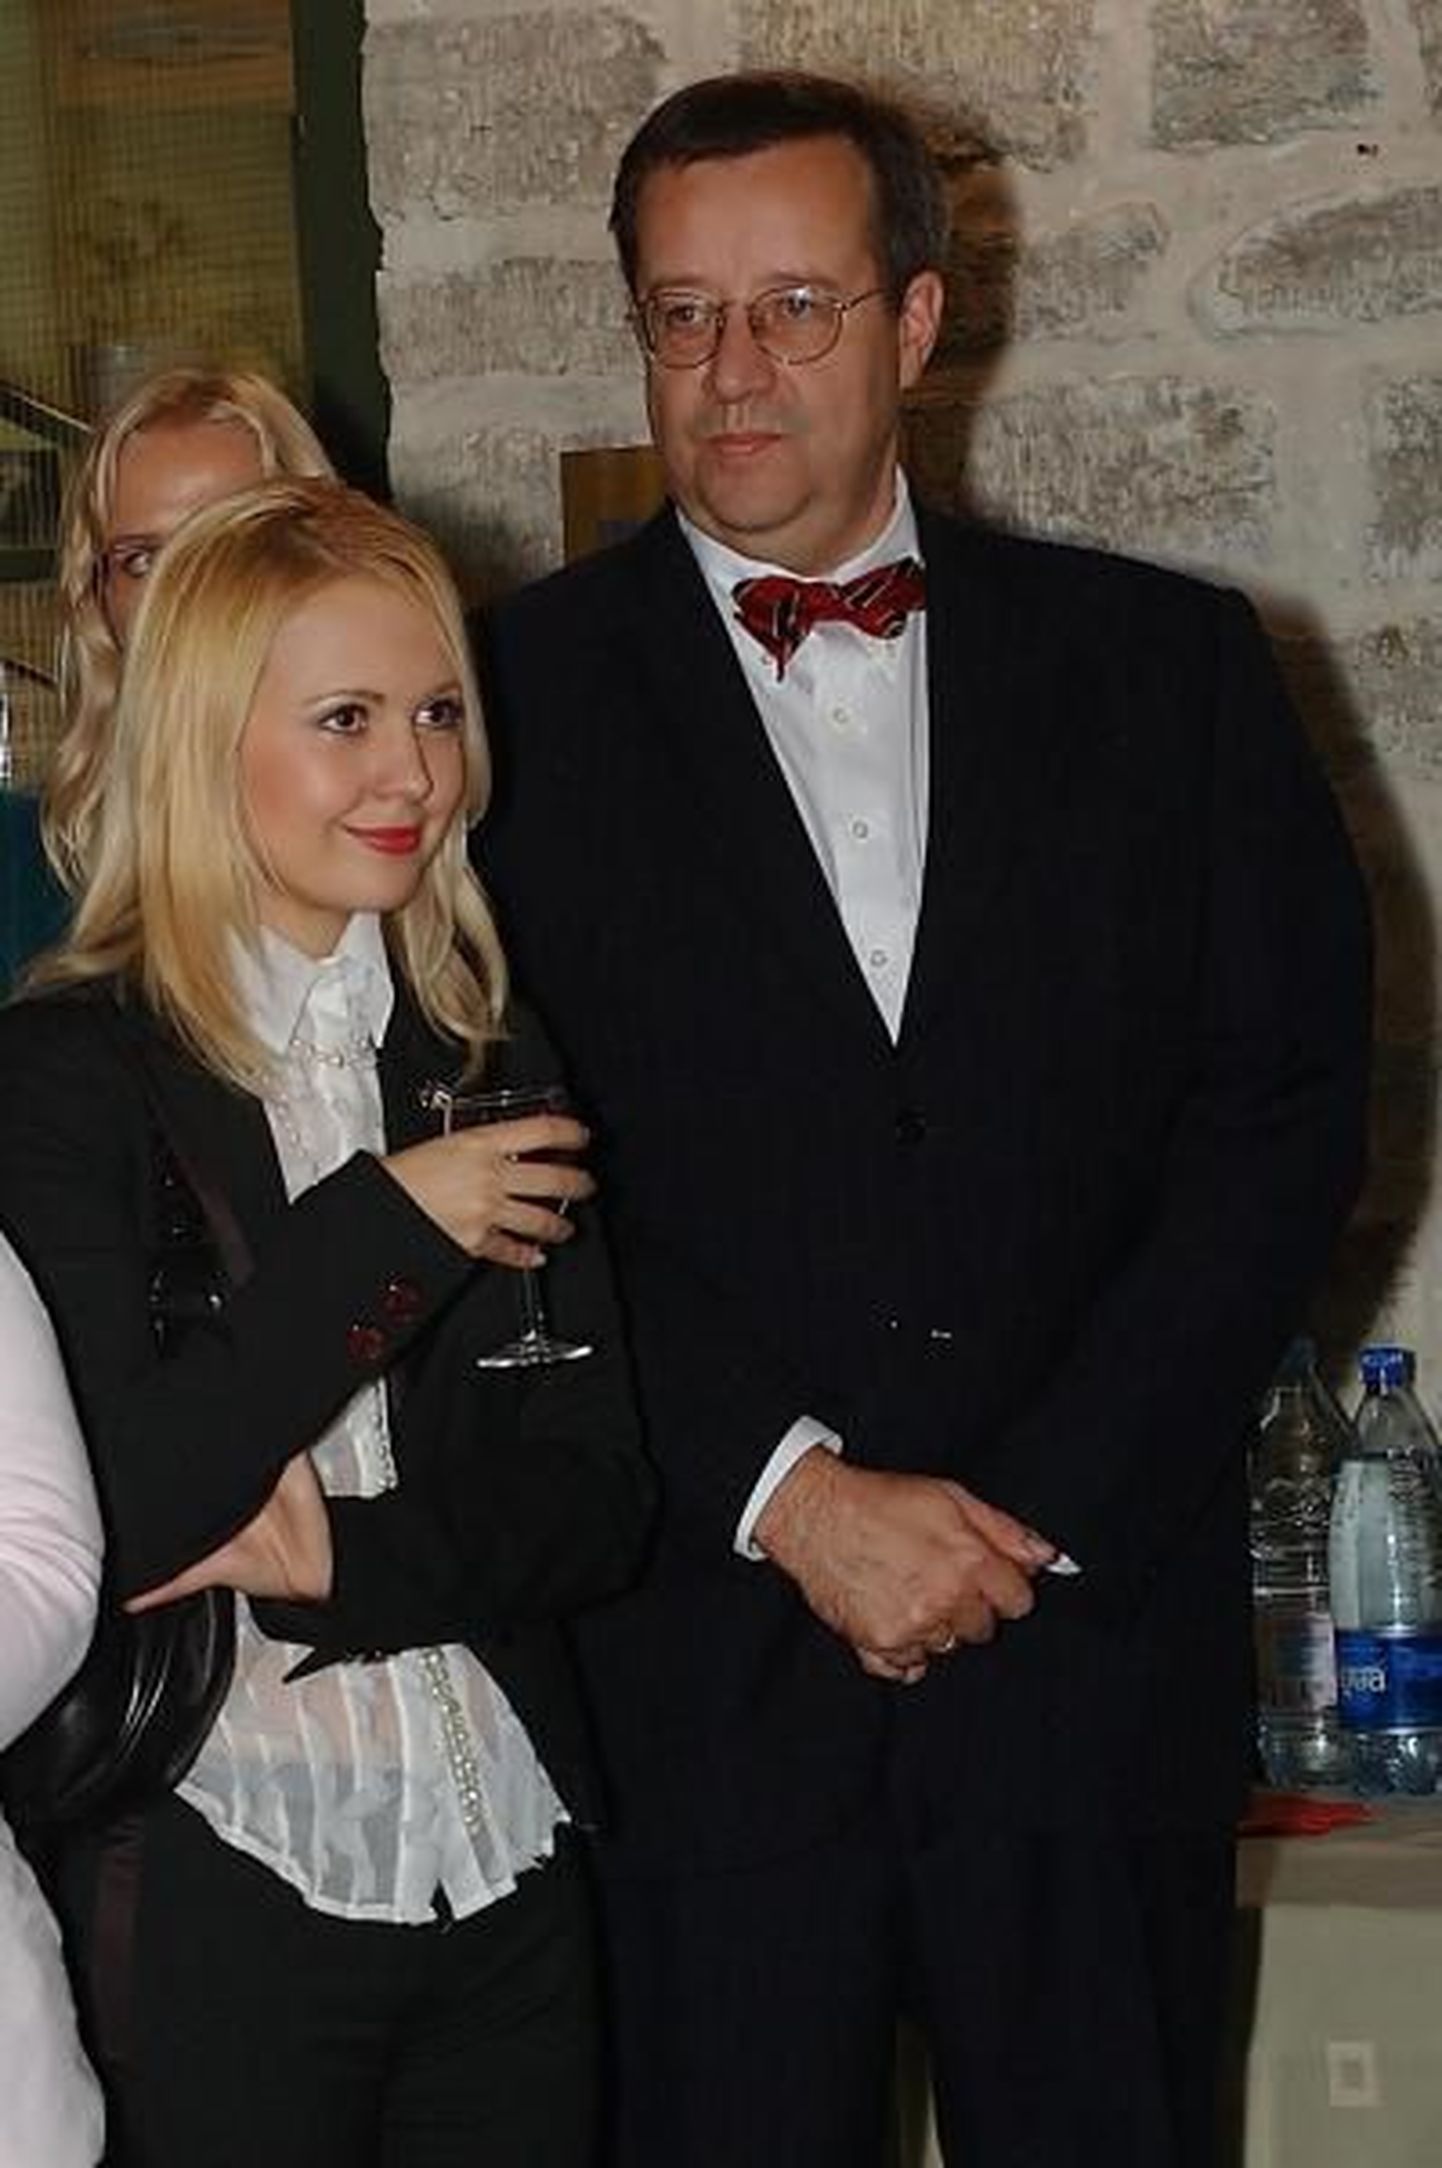 Anna-Maria Galojan ja Toomas-Hendrik Ilves Eesti Euroopa Liikumise Jõulupeol aastal 2005, kus Ilves autasustas Galojani, kui parimat EEL`i nõukogu liiget.